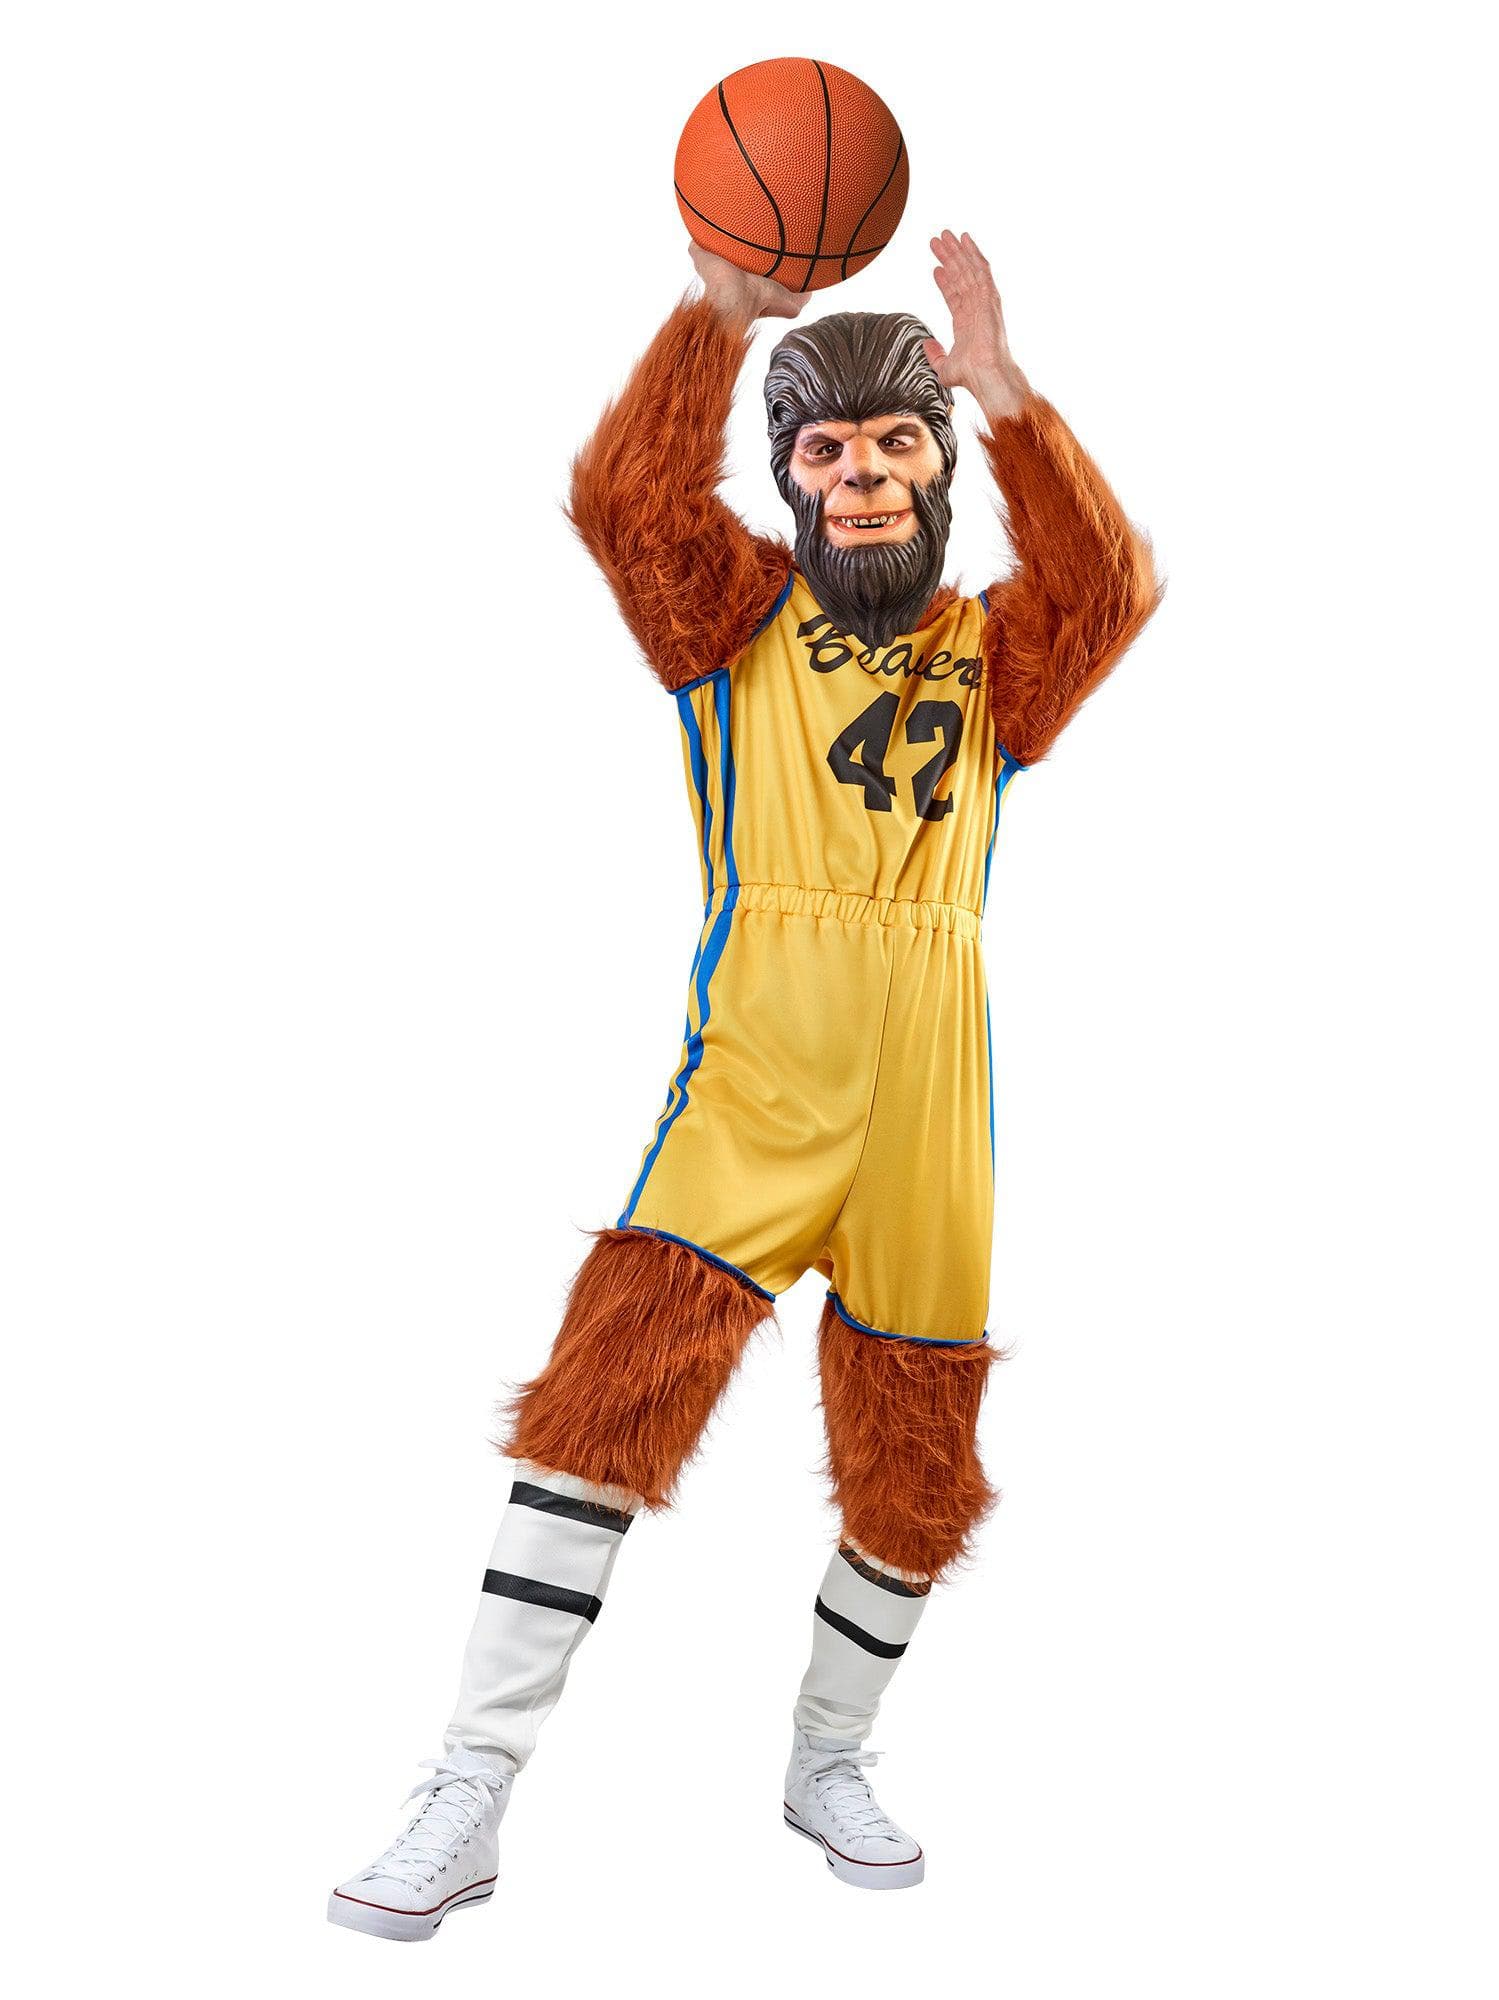 Men's 1985 Teen Wolf Basketball Uniform - costumes.com